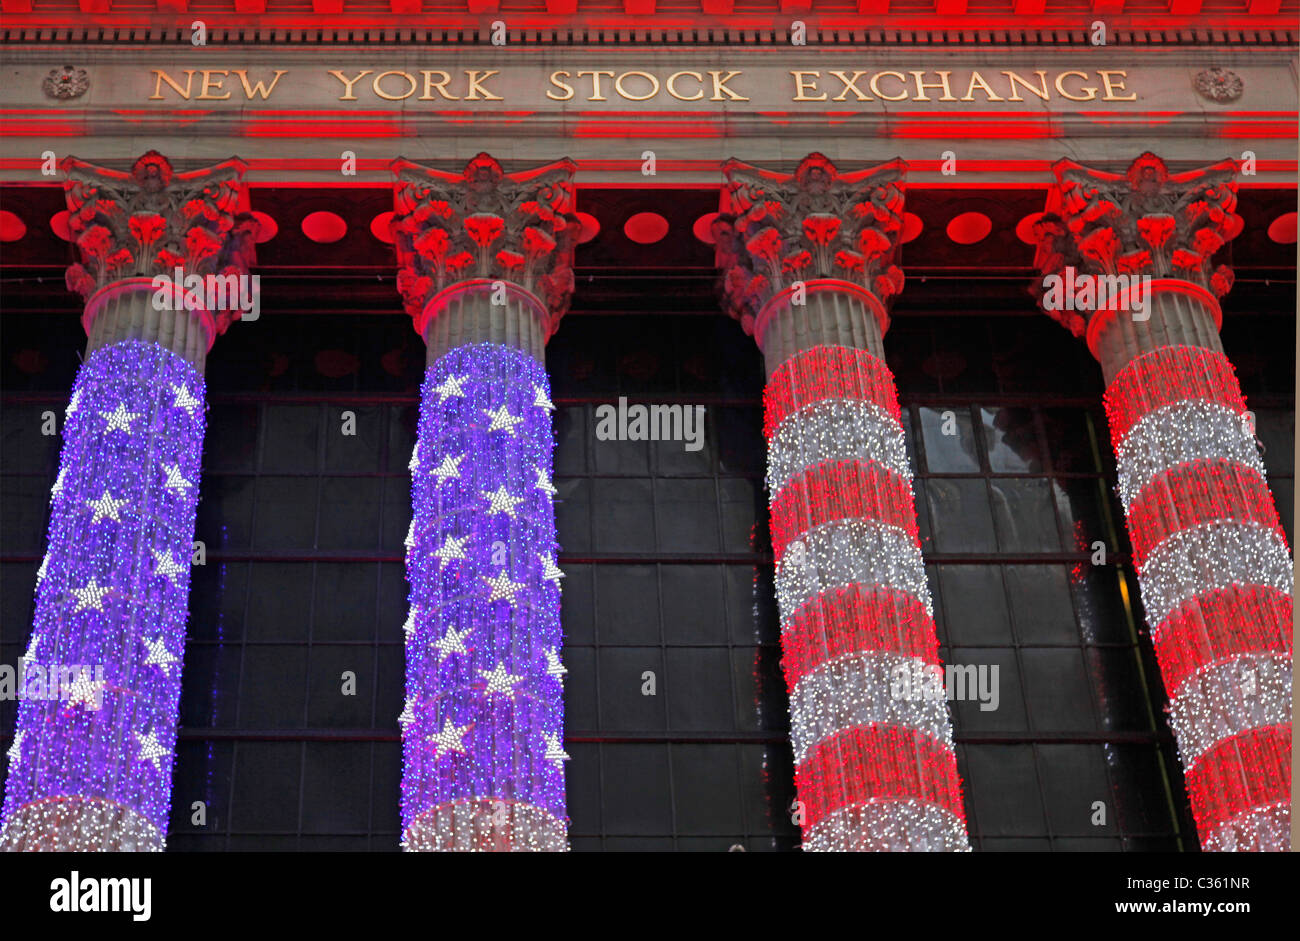 Bourse de New York drapeau américain lights Banque D'Images